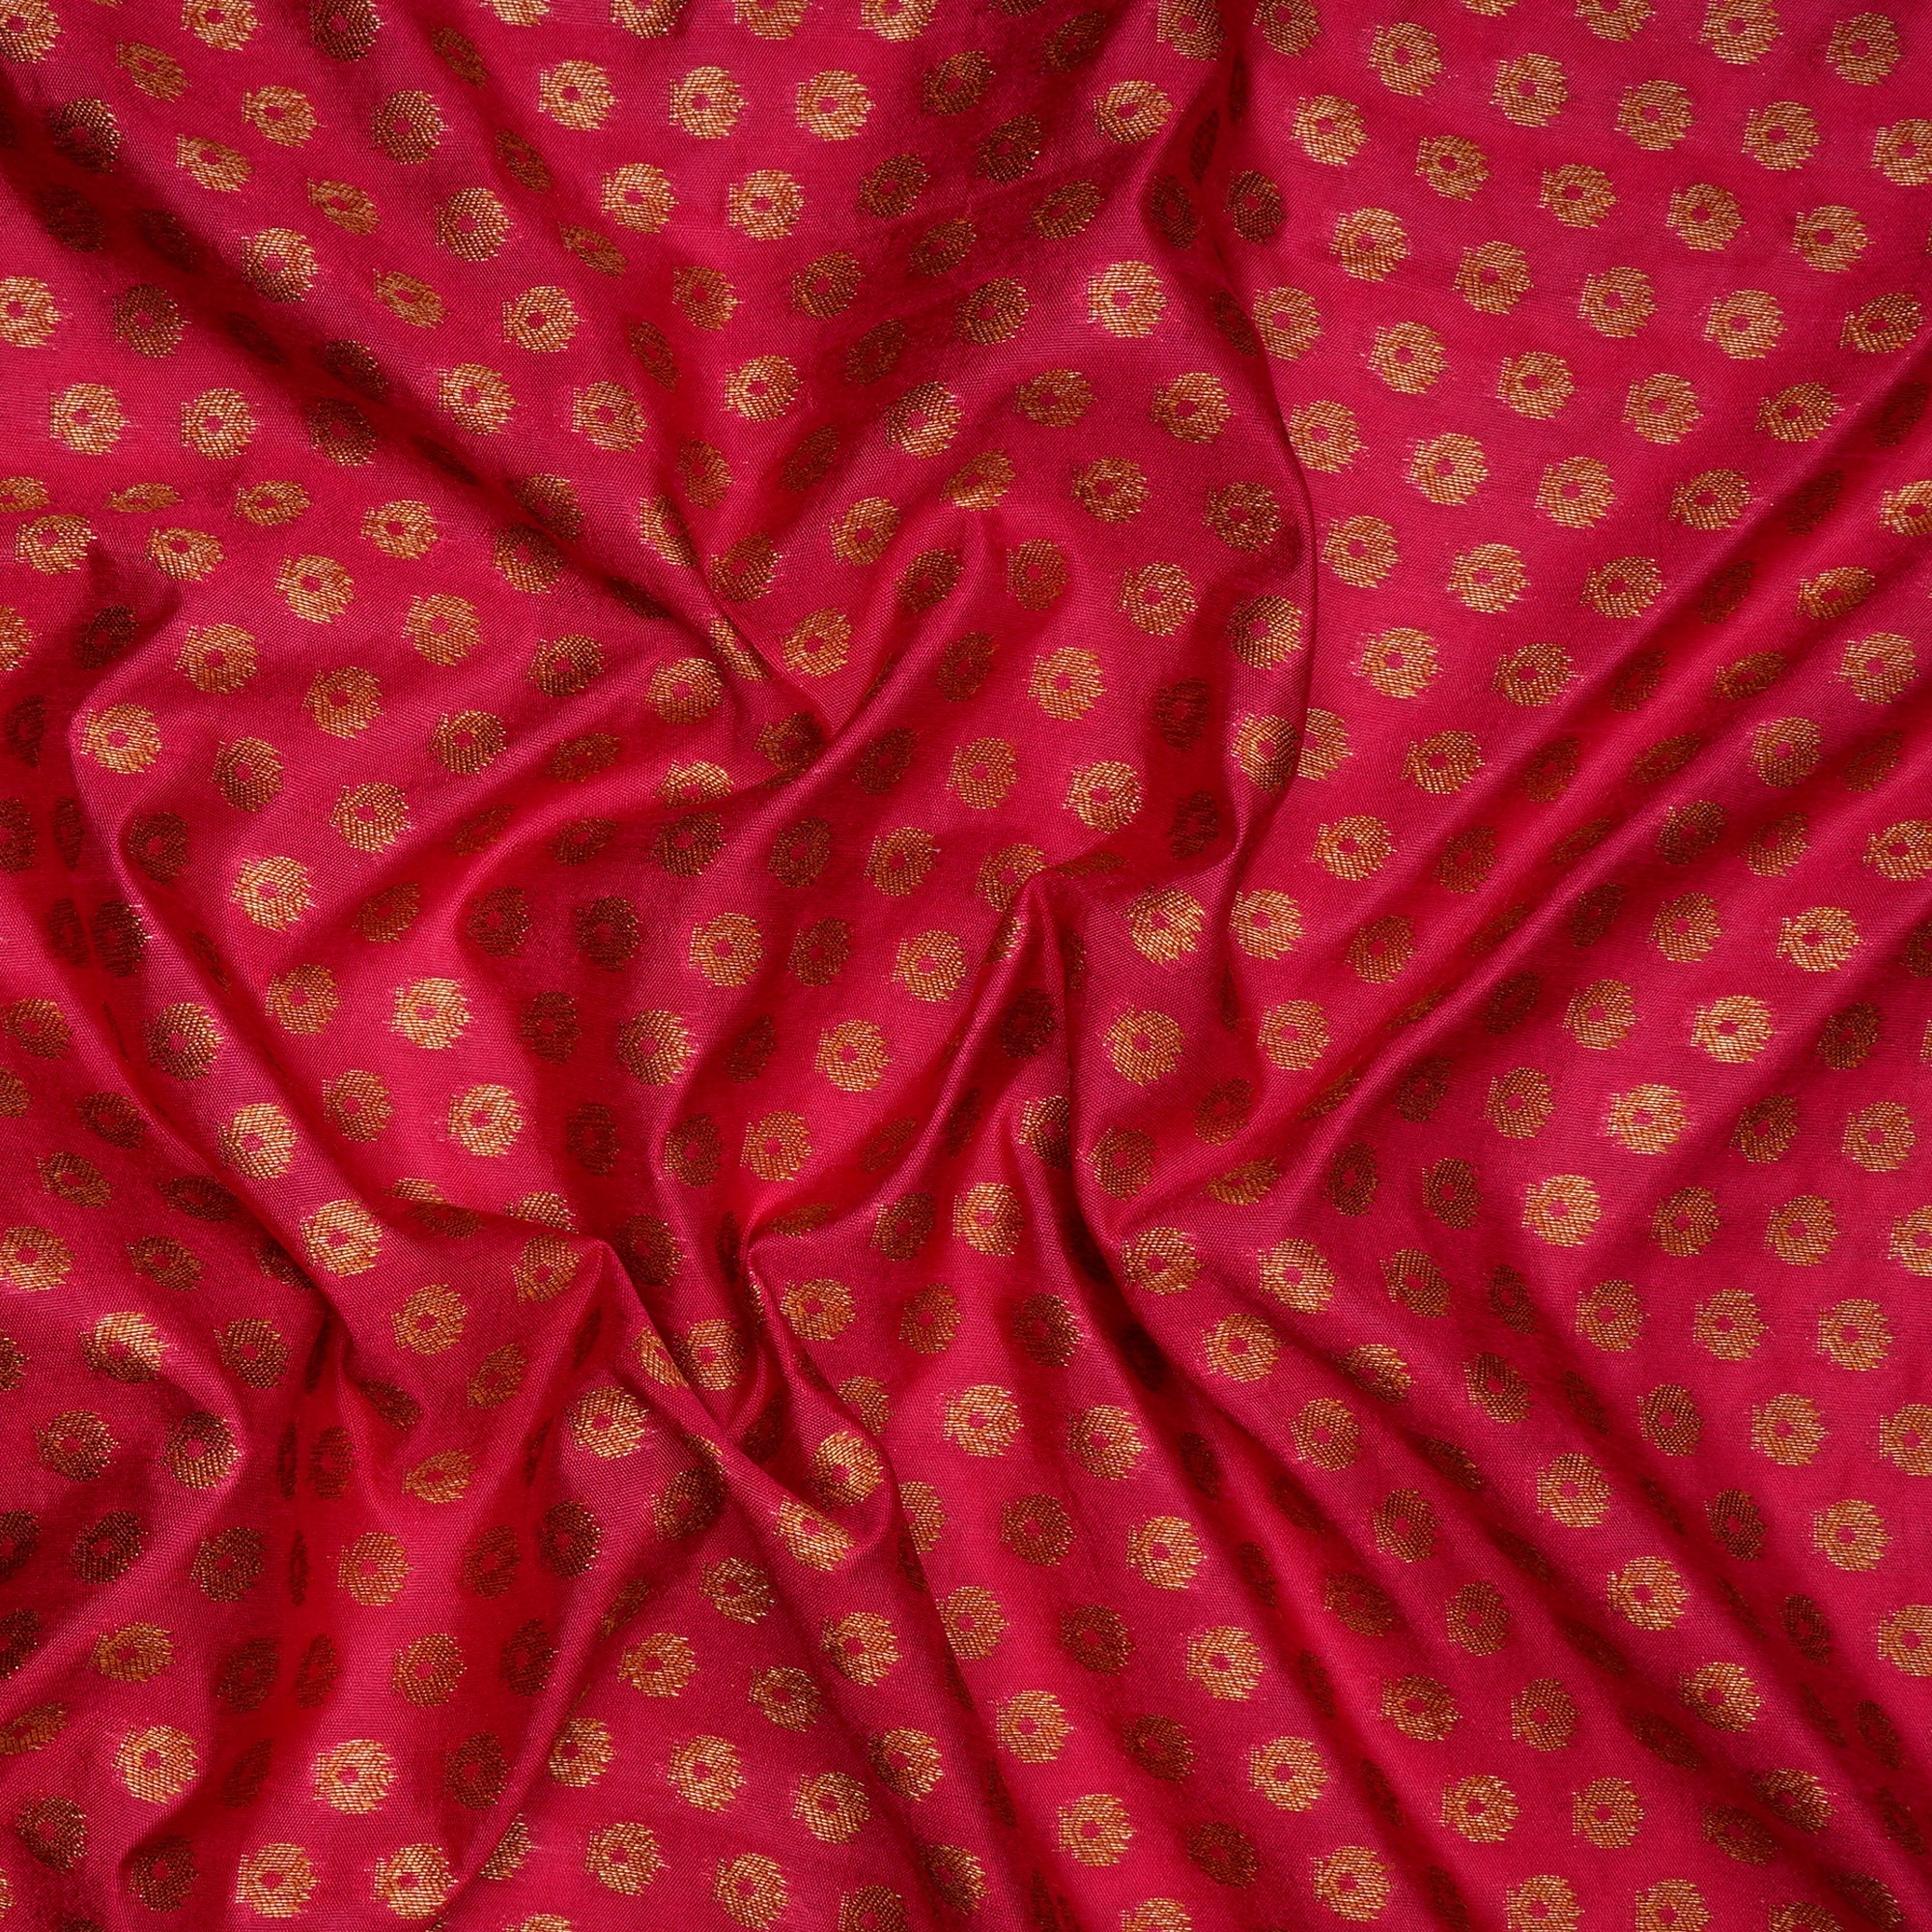 Pink Booti Pattern Blended Banarasi Brocade Fabric